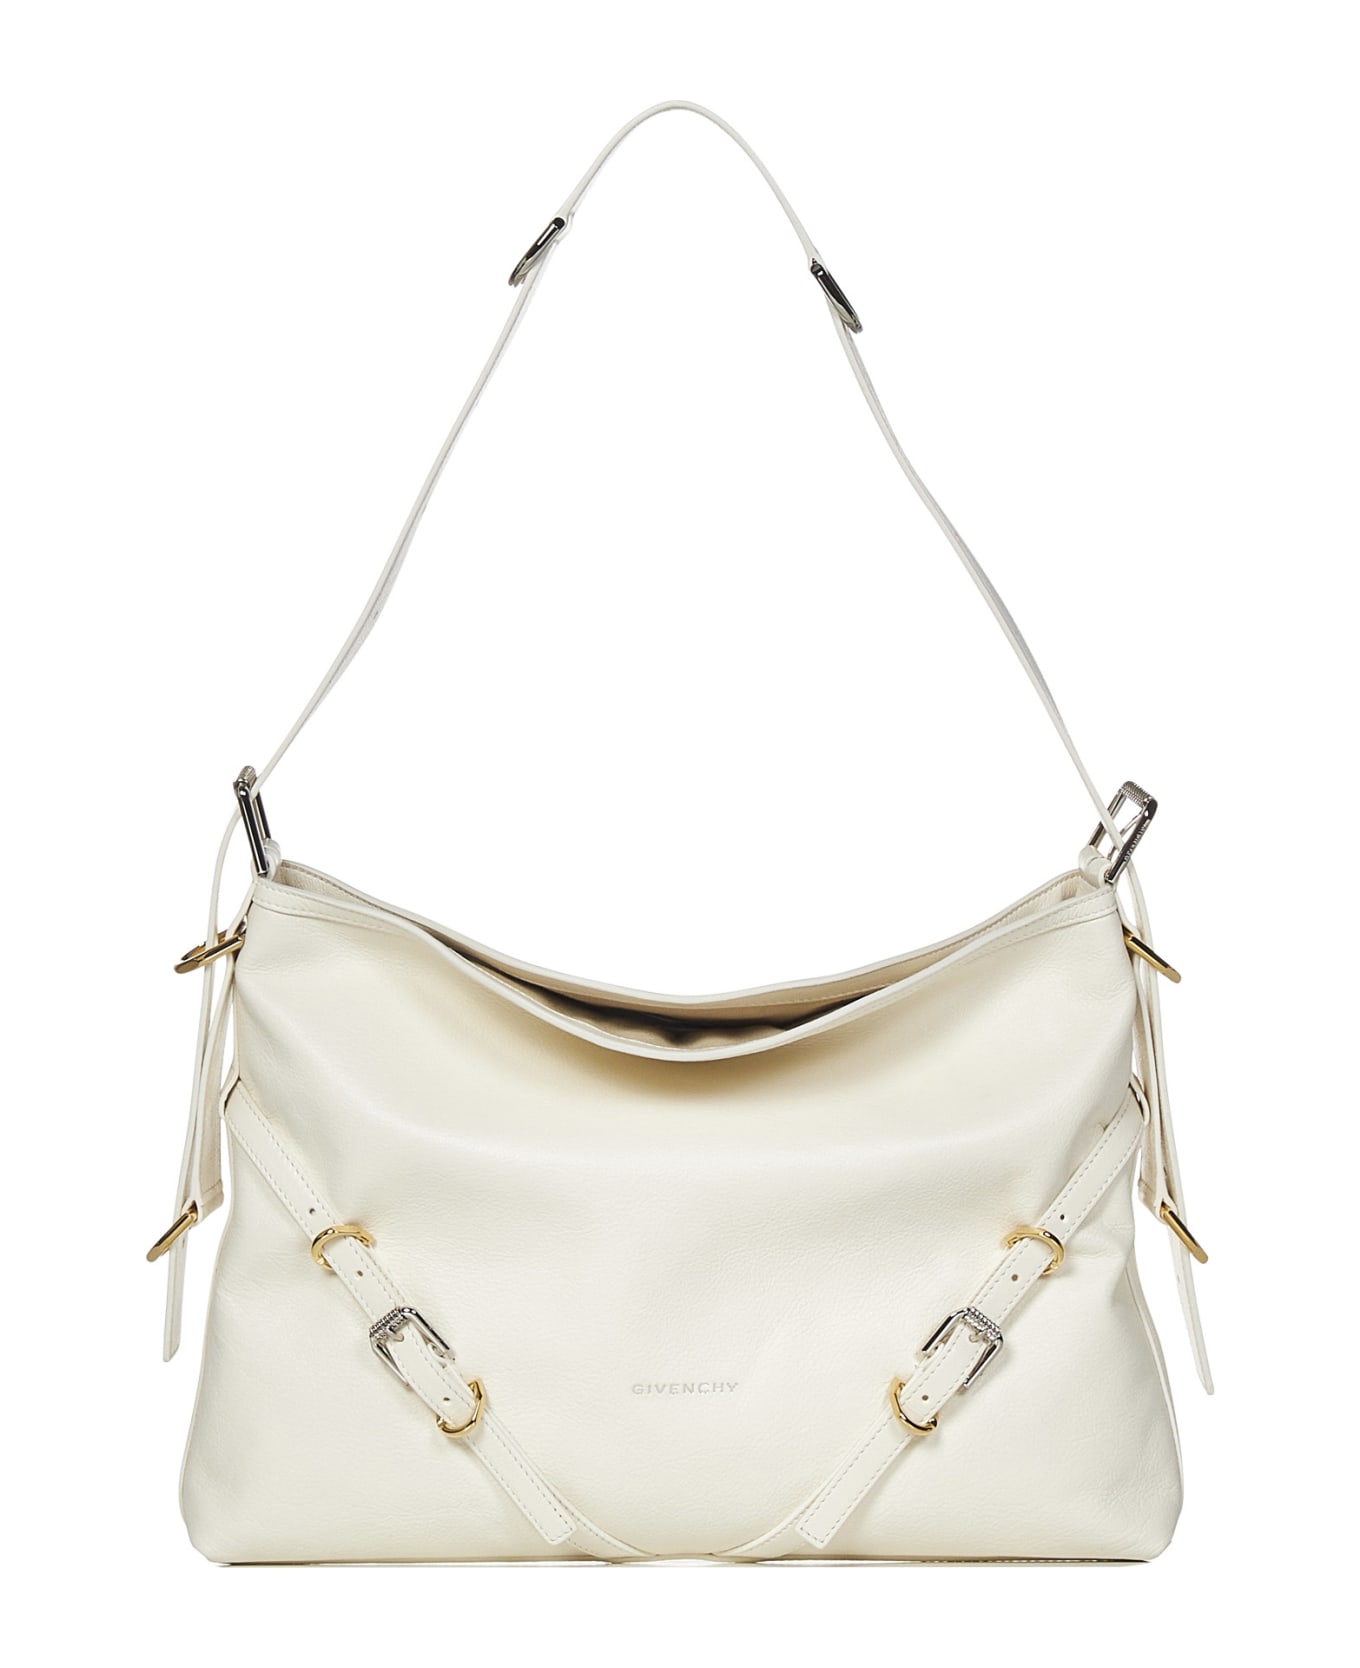 Givenchy Voyou Shoulder Bag - White